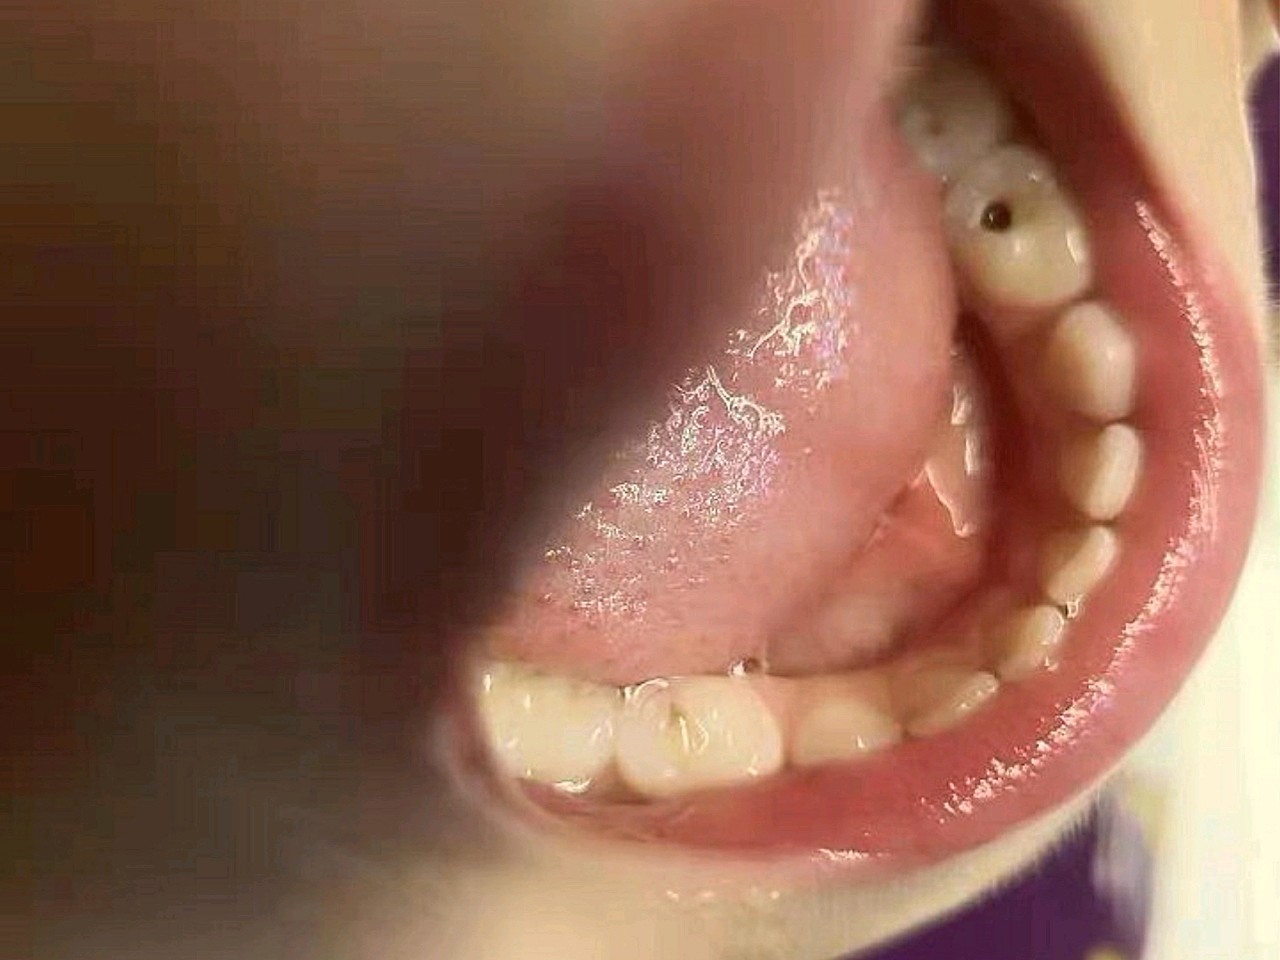 虽然每天都监督小朋友刷牙,但是还是发现一个牙齿有洞